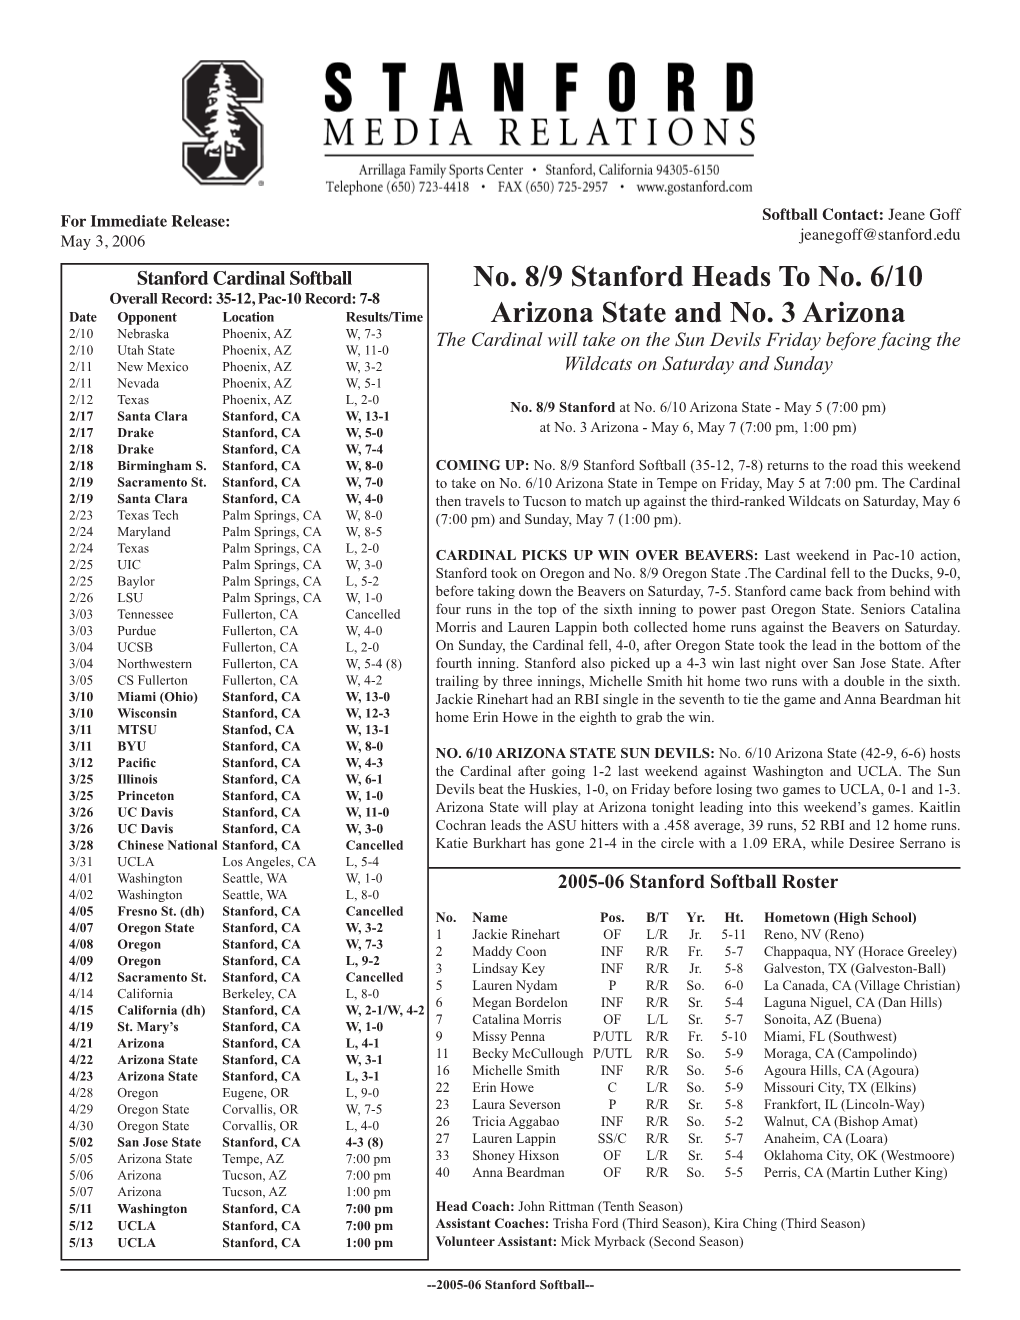 No. 8/9 Stanford Heads to No. 6/10 Arizona State and No. 3 Arizona